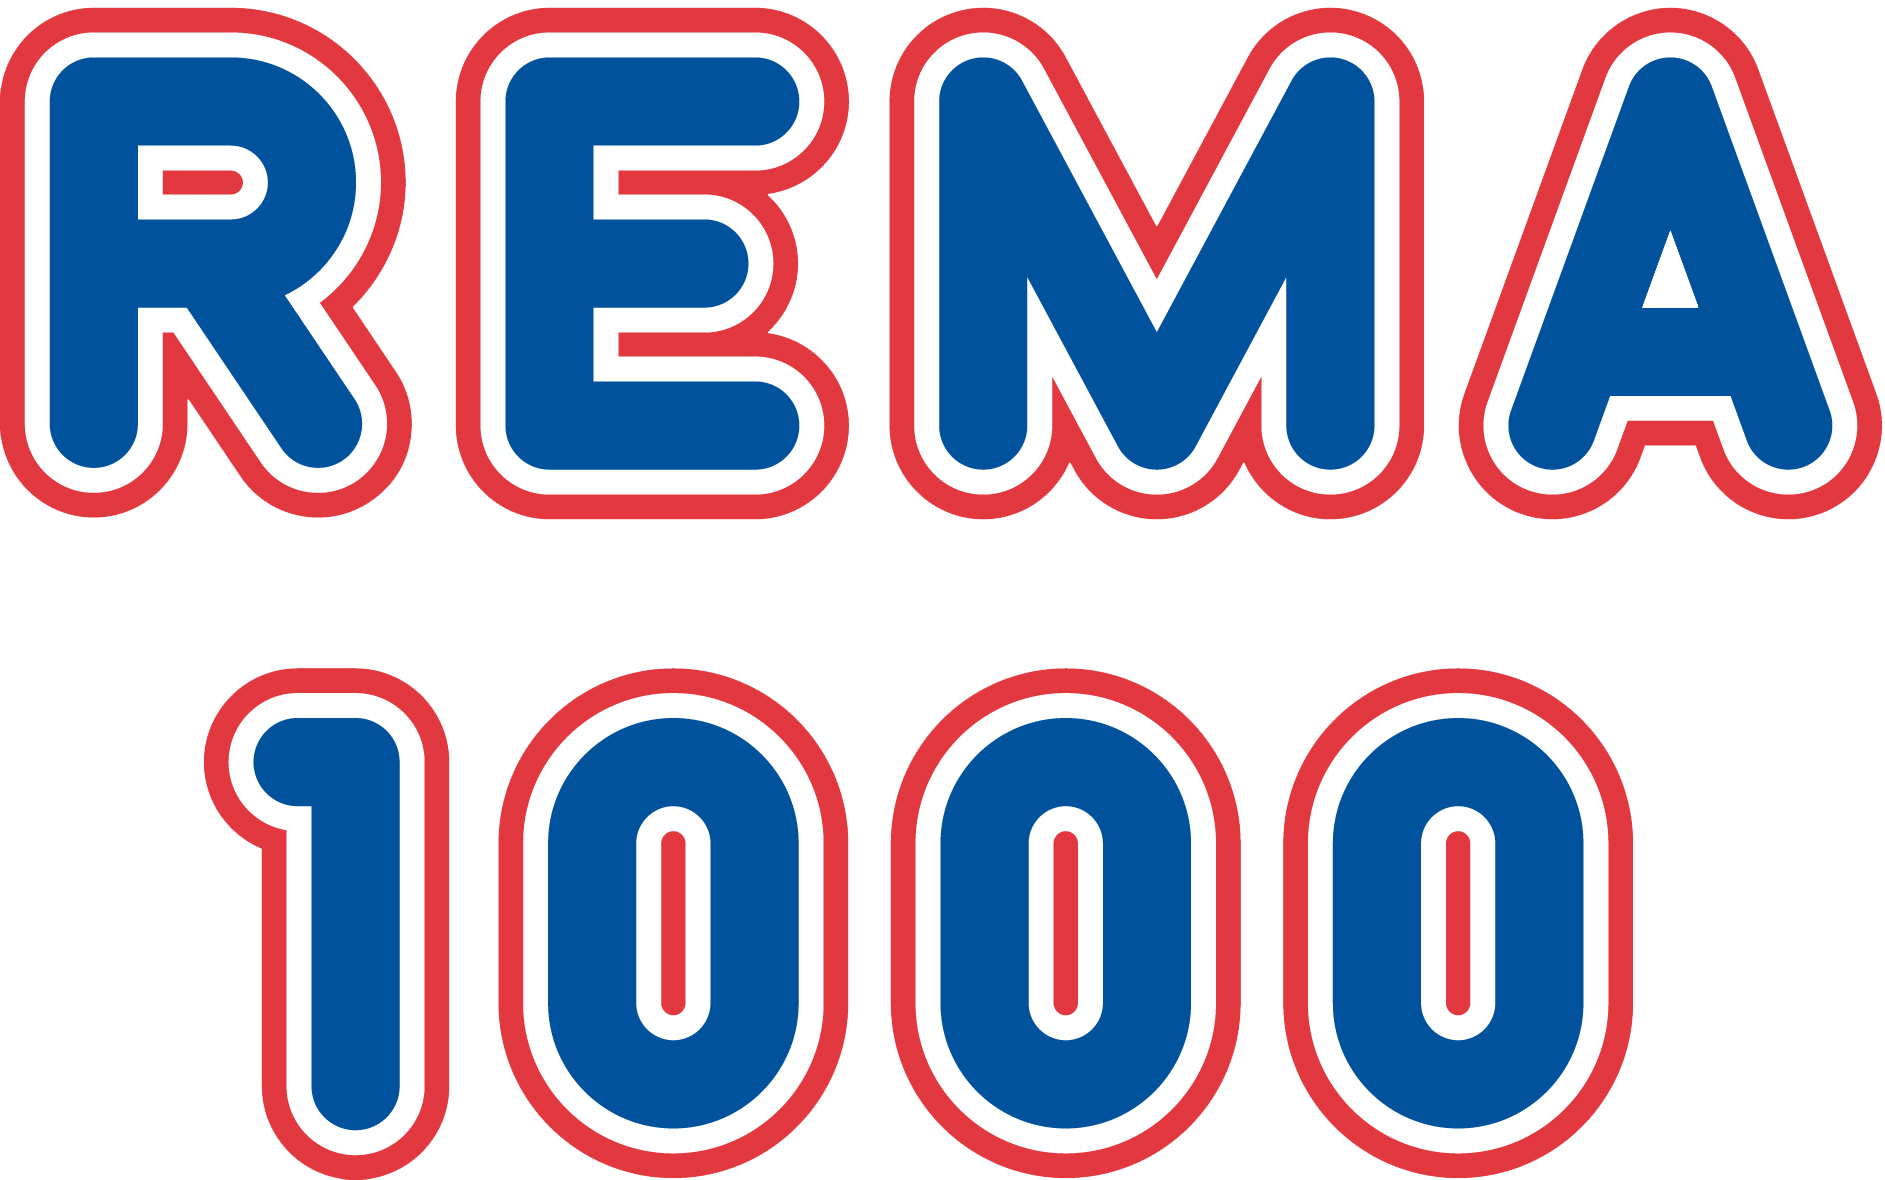 Rema1000